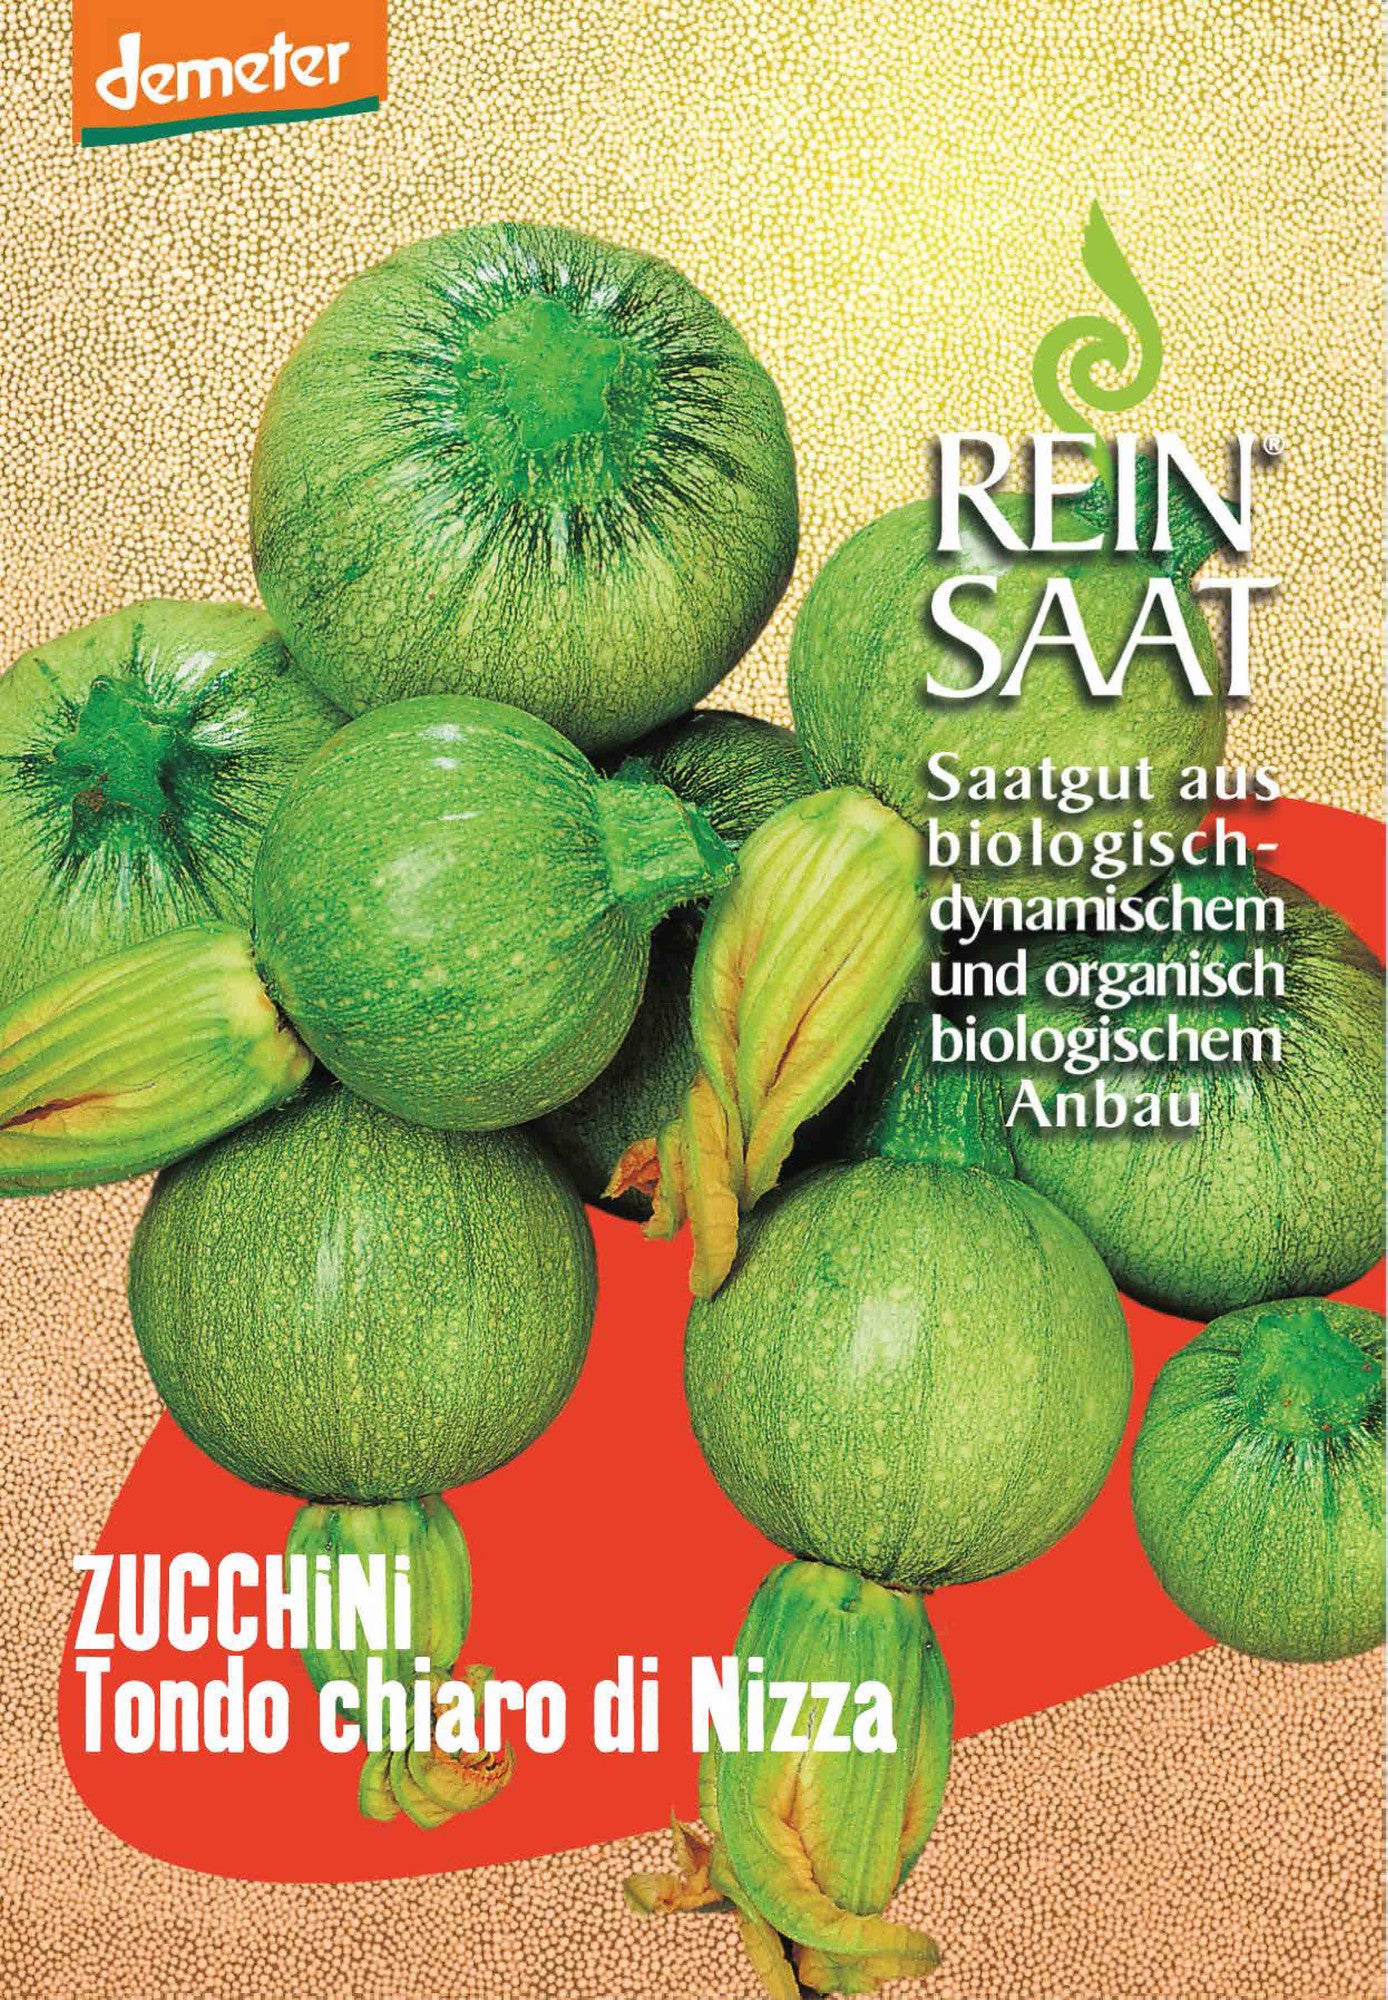 Zucchini Tondo chiaro die Nizza | BIO Zucchinisamen von Reinsaat